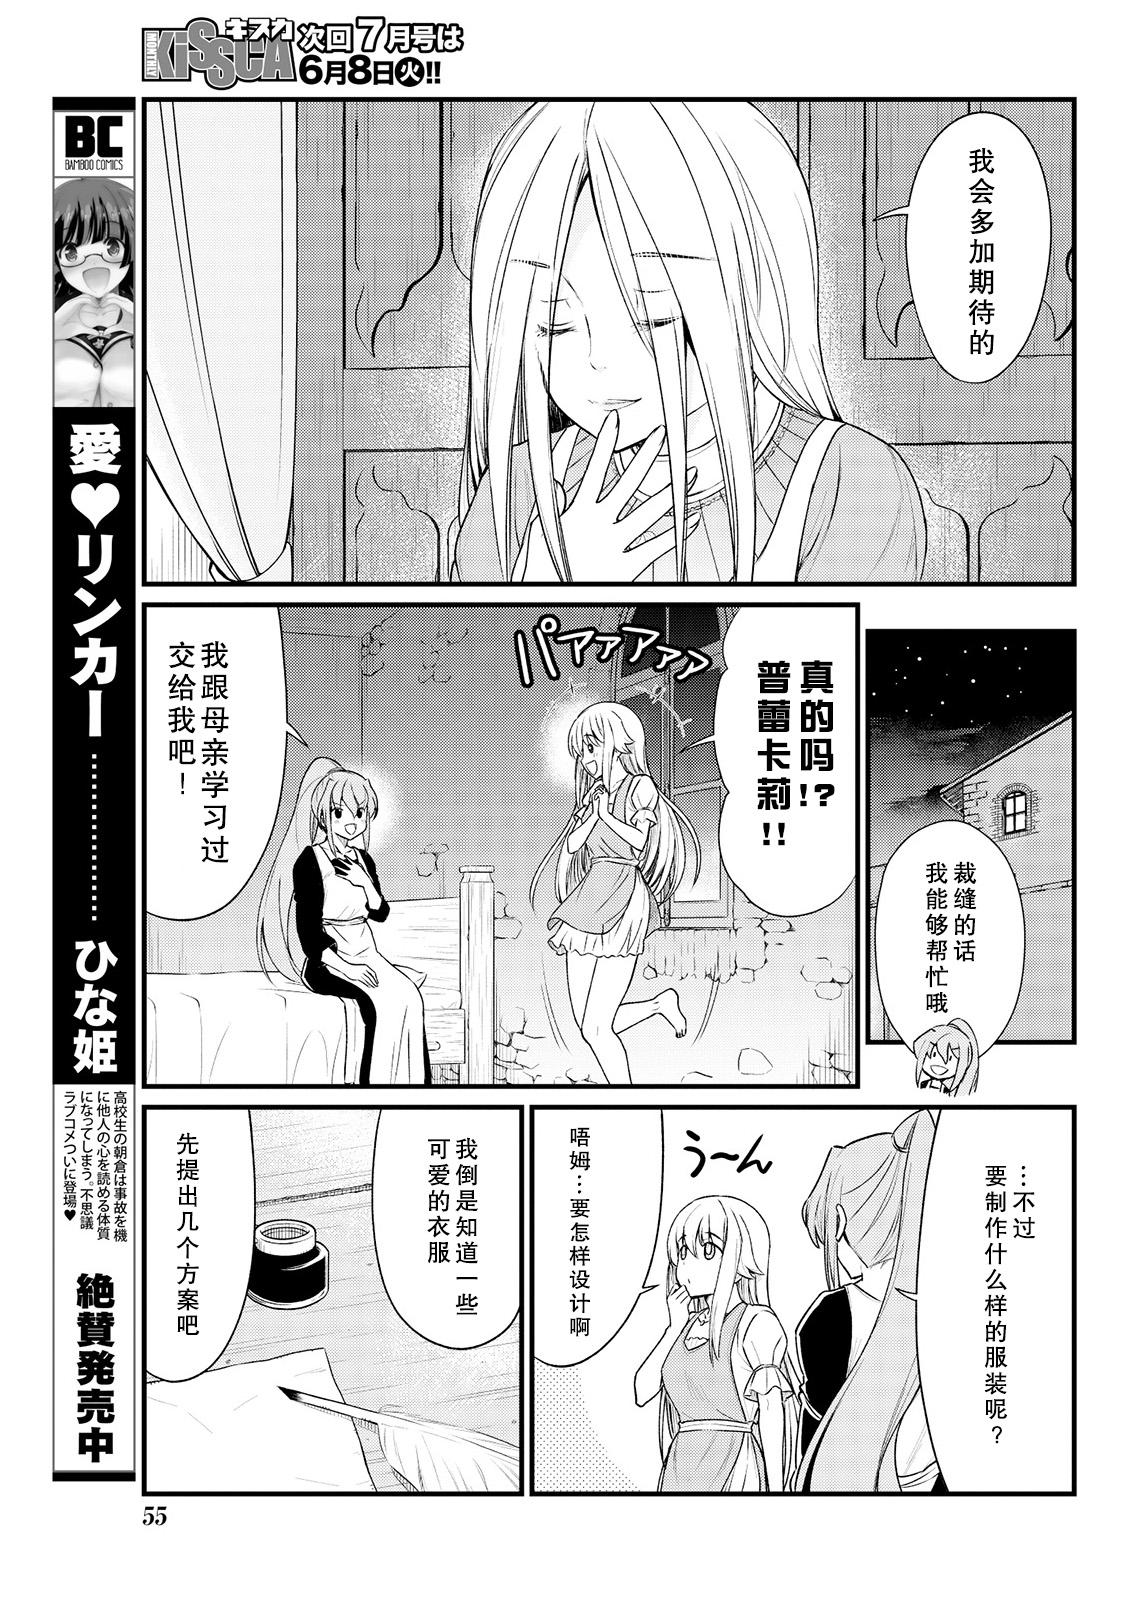 Blow Job Kukkorose no Himekishi to nari, Yuri Shoukan de Hataraku koto ni Narimashita. 8 Amature Porn - Page 9